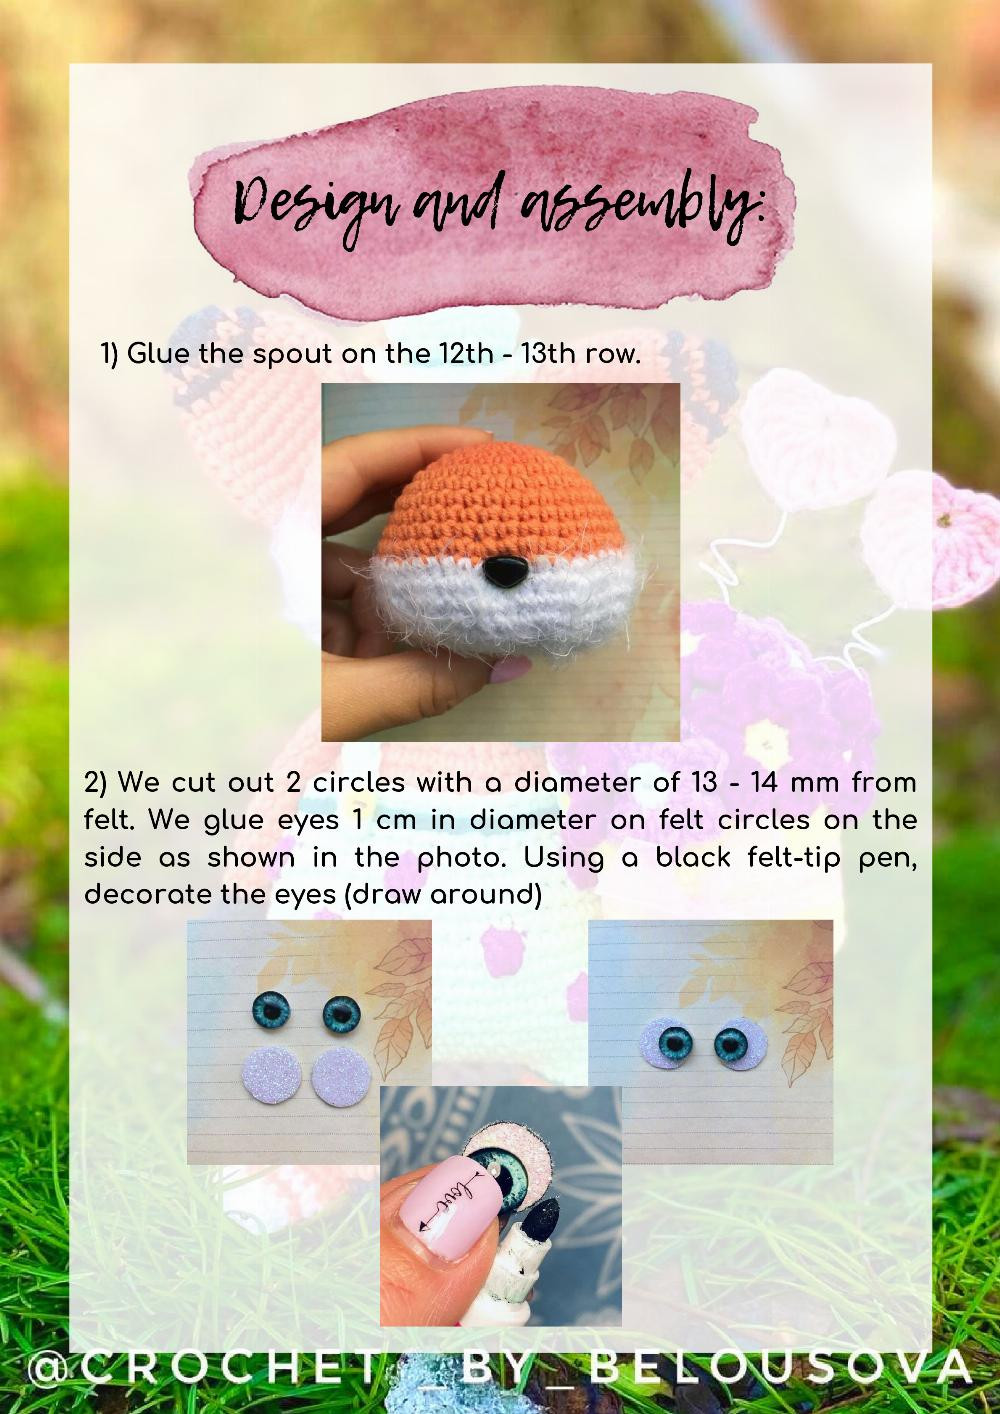 Crochet pattern "Fox Mr. Darcy"